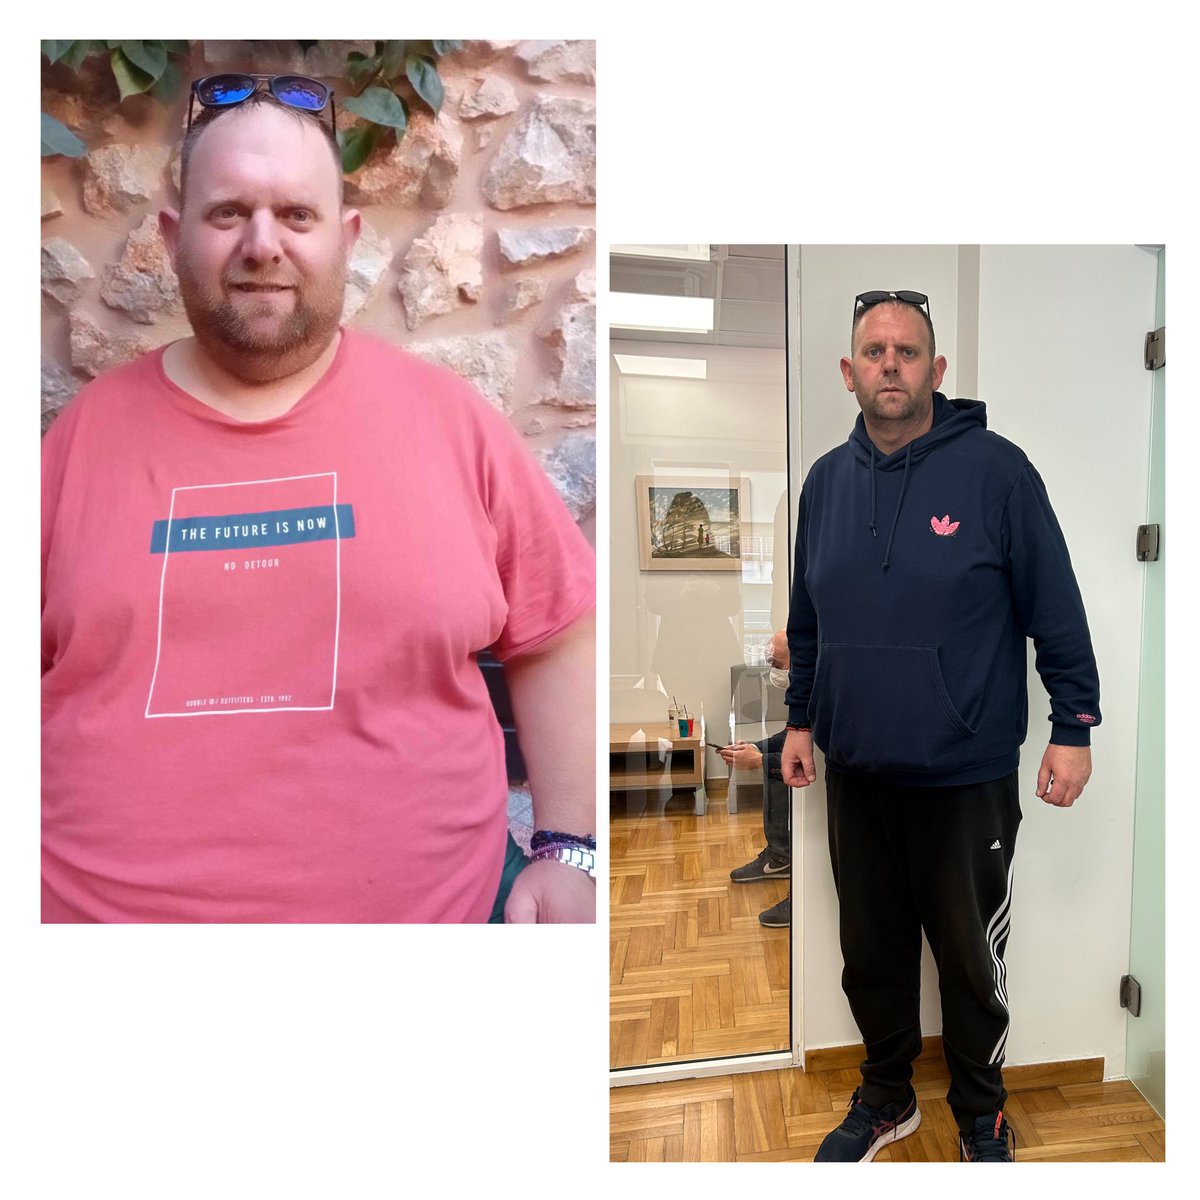 🔹Εντυπωσιακά αποτελεσματα μετά το ειδικό γαστρικό μανίκι από τον ιατρό Σωτήρη Γαβριήλ. 

Ο φίλος μας κατάφερε να χάσει 73 ολόκληρα κιλά σε μόλις 5 μήνες. Έχει καταπολεμήσει την κεντρική παχυσαρκίας κι έχει αλλάξει ριζικά η ζωή.

 #γαστρικο_μανικι #sleevegastrectomy